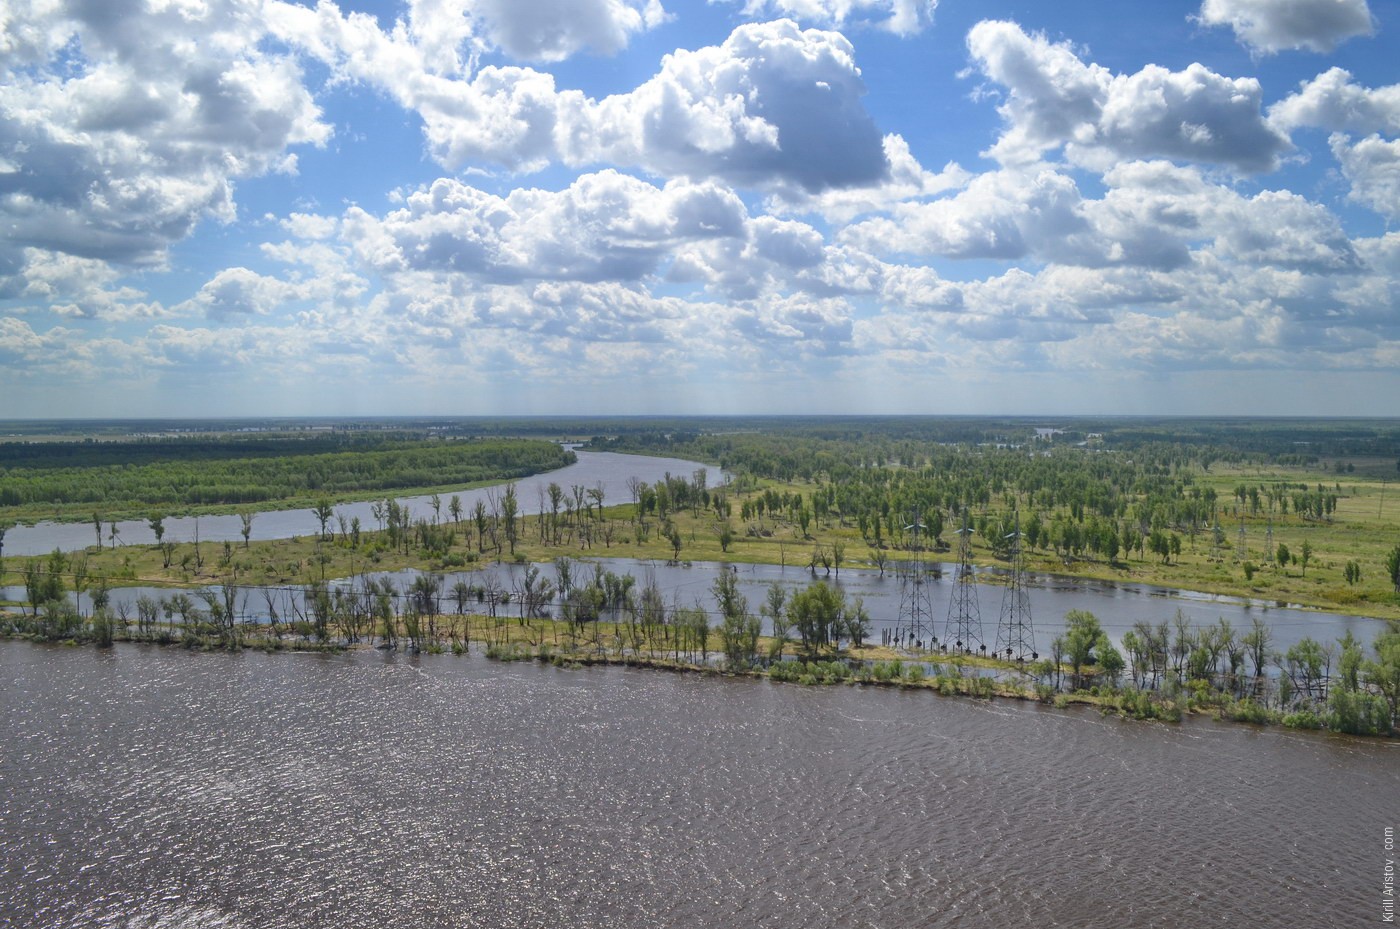 Вид на разлившуюся реку с опоры ЛЭП, Location: Река Тобол. Ярковский район, Тюменская область, Россия.